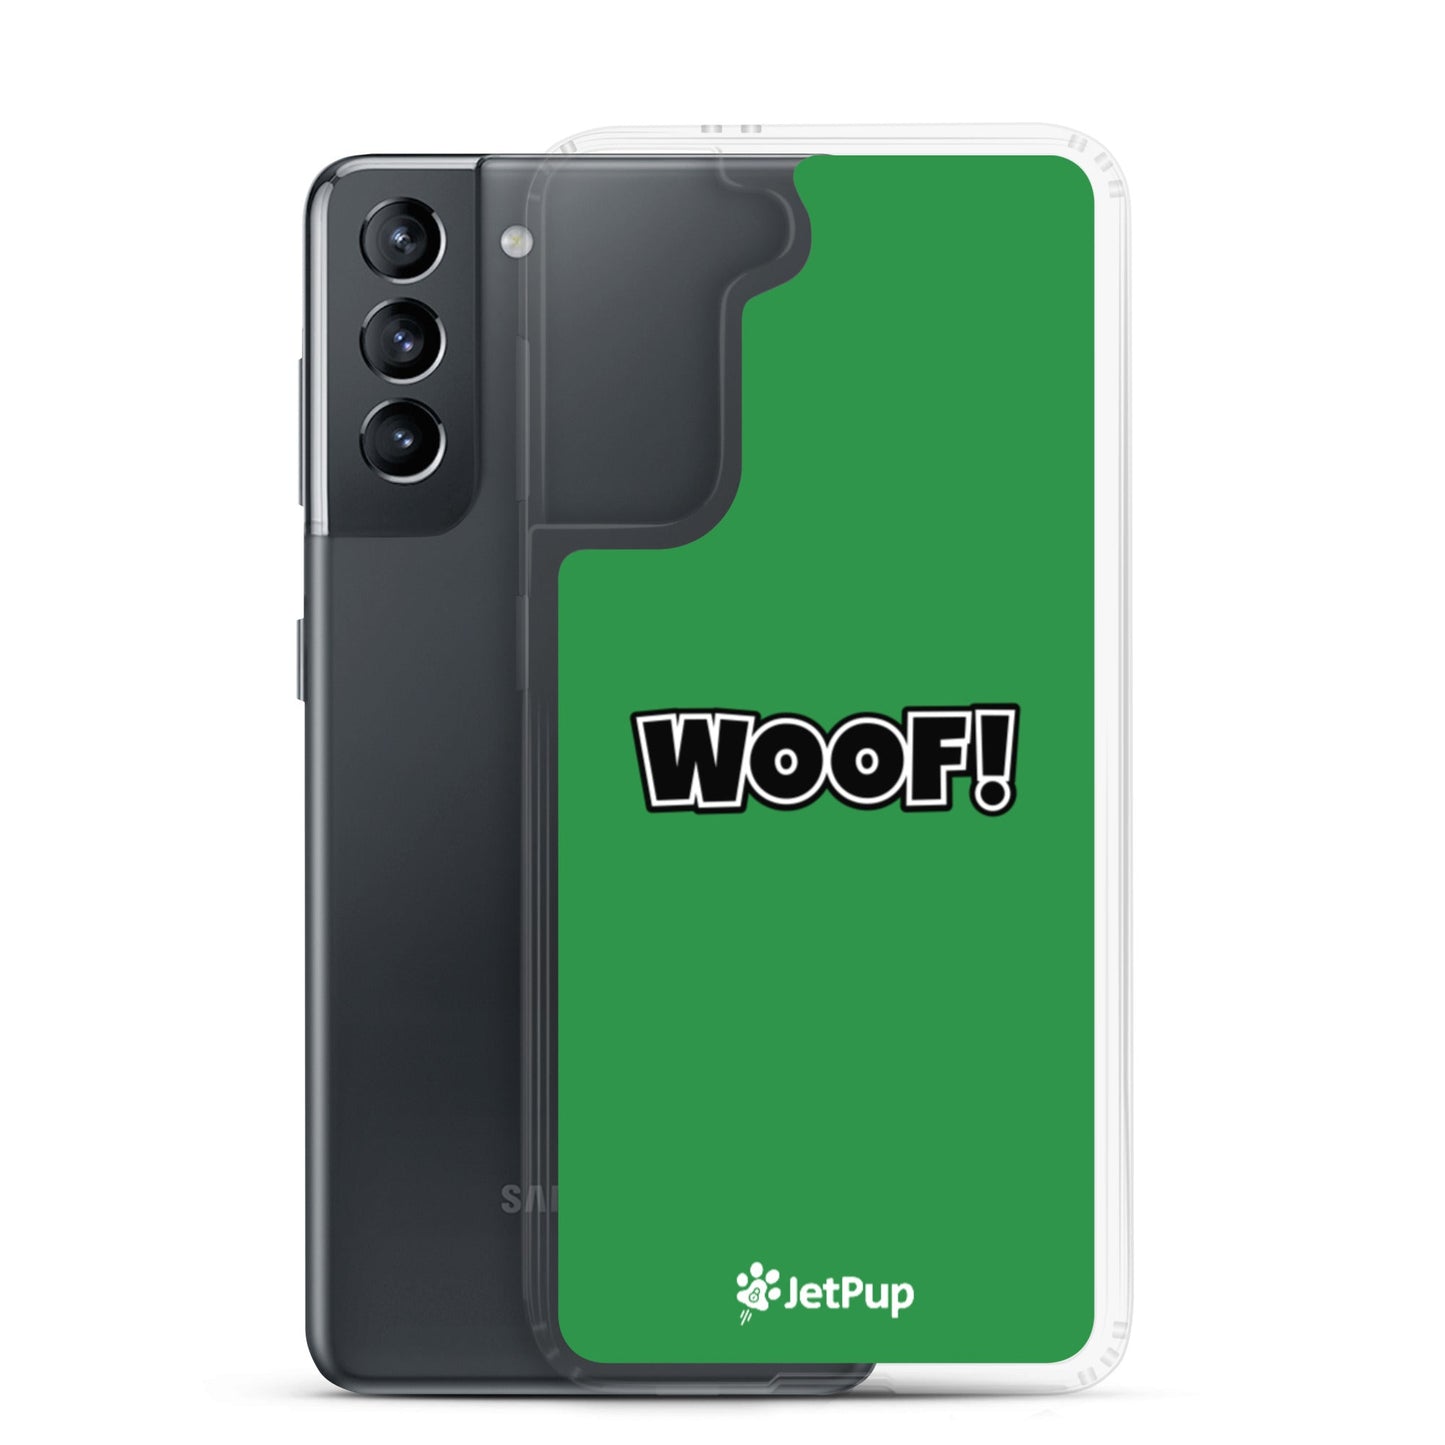 Woof Samsung Case - Green - JetPup